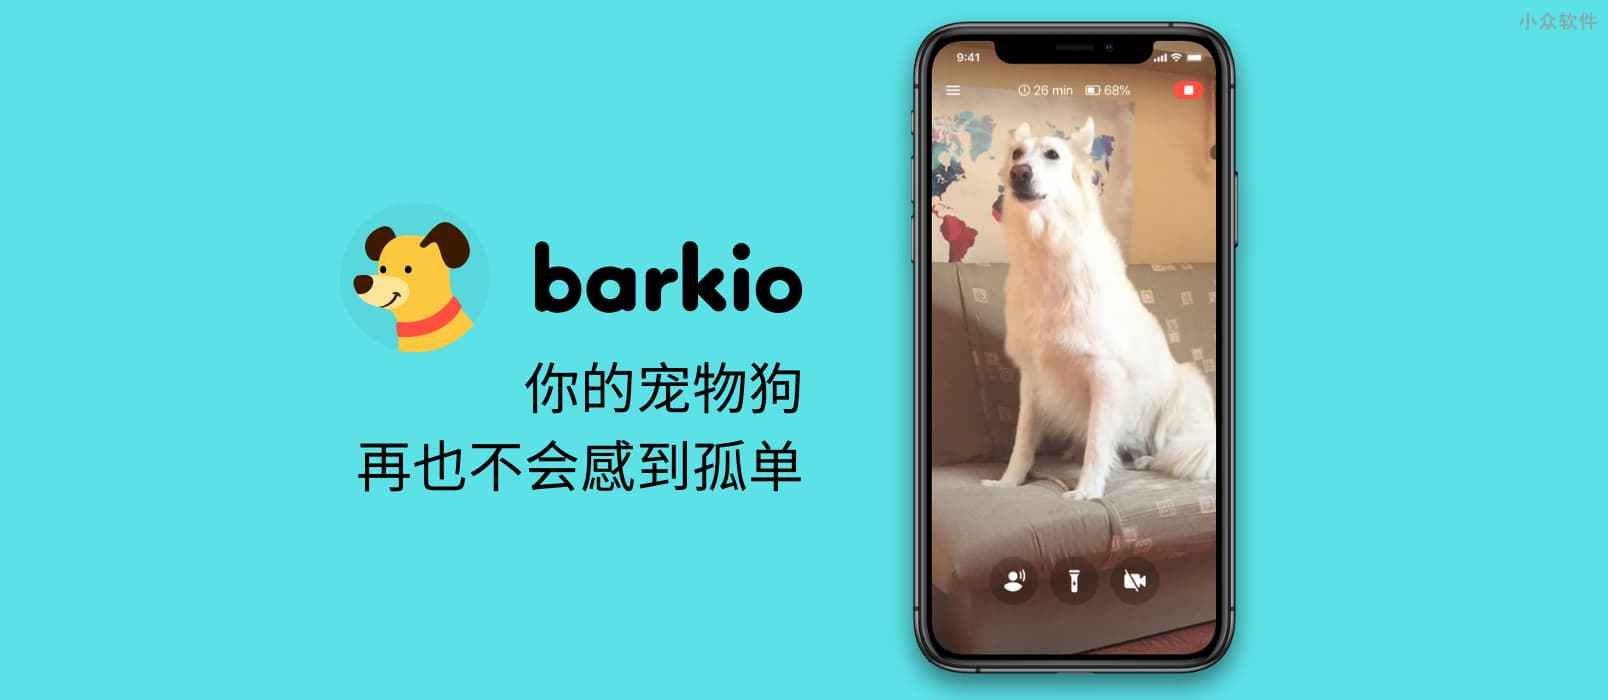 Barkio – 利用两台智能手机，远程监控家中宠物，还能和宠物打招呼